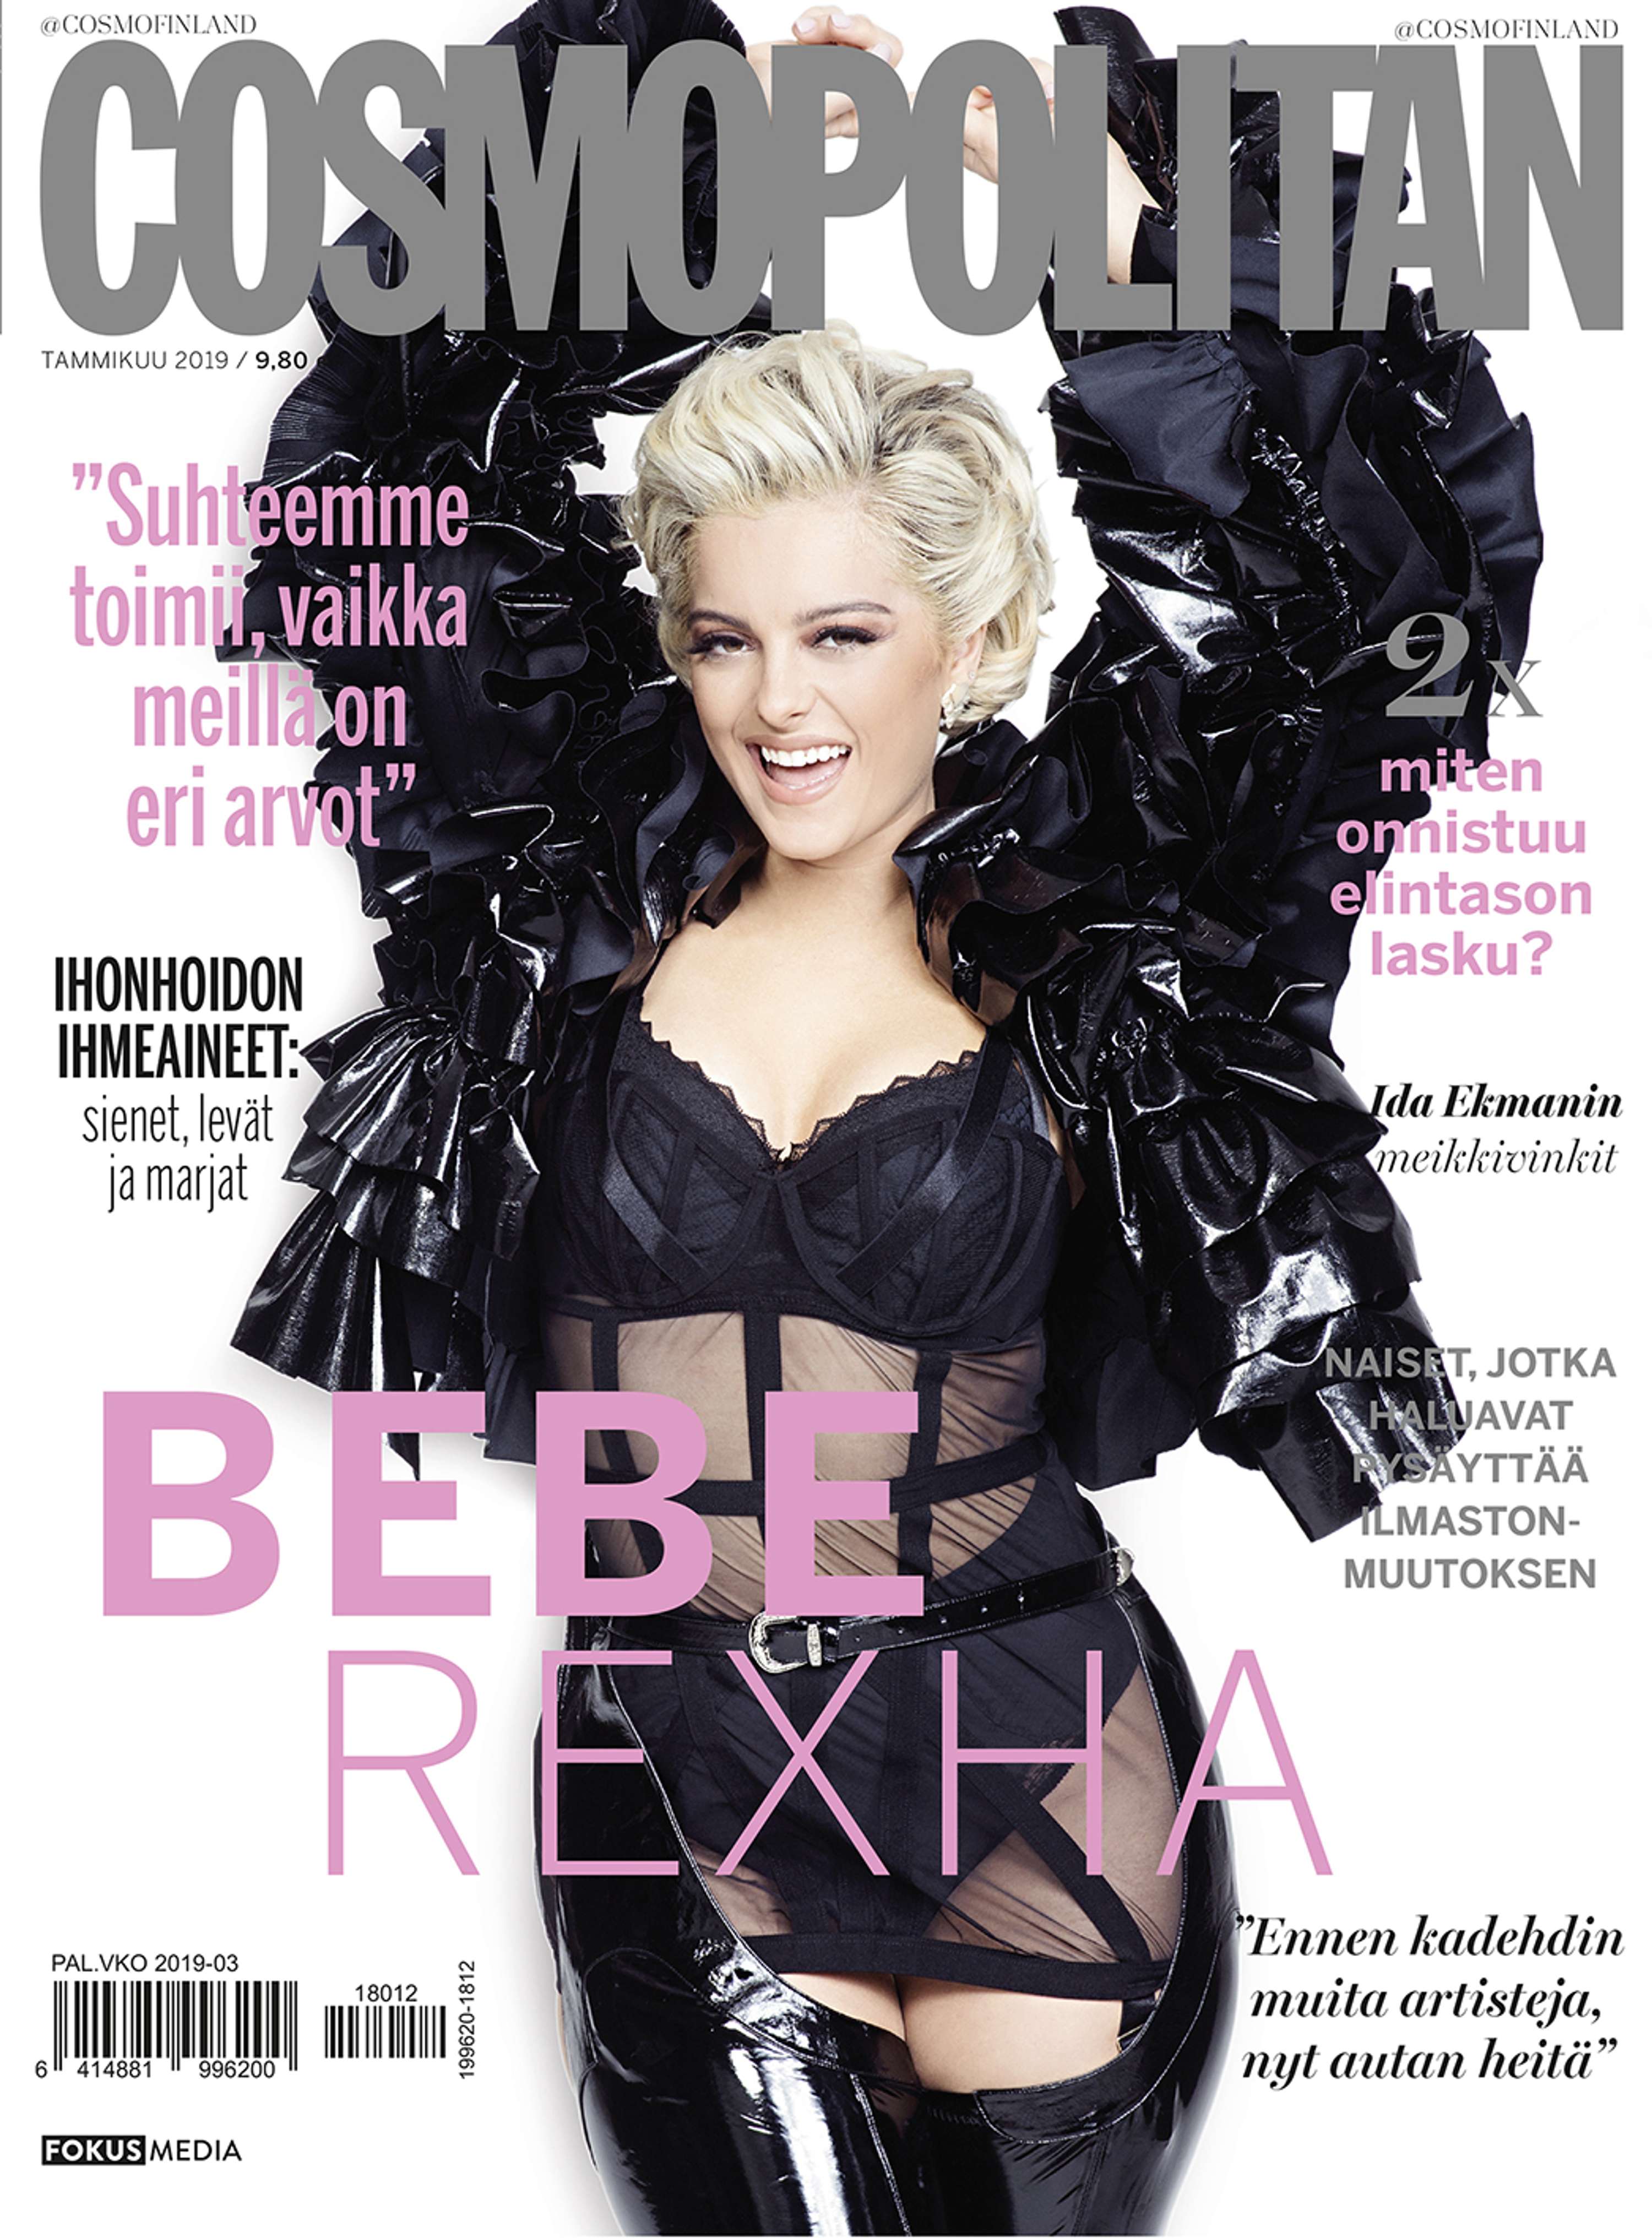 Bebe Rexha as seen in Cosmopolitan